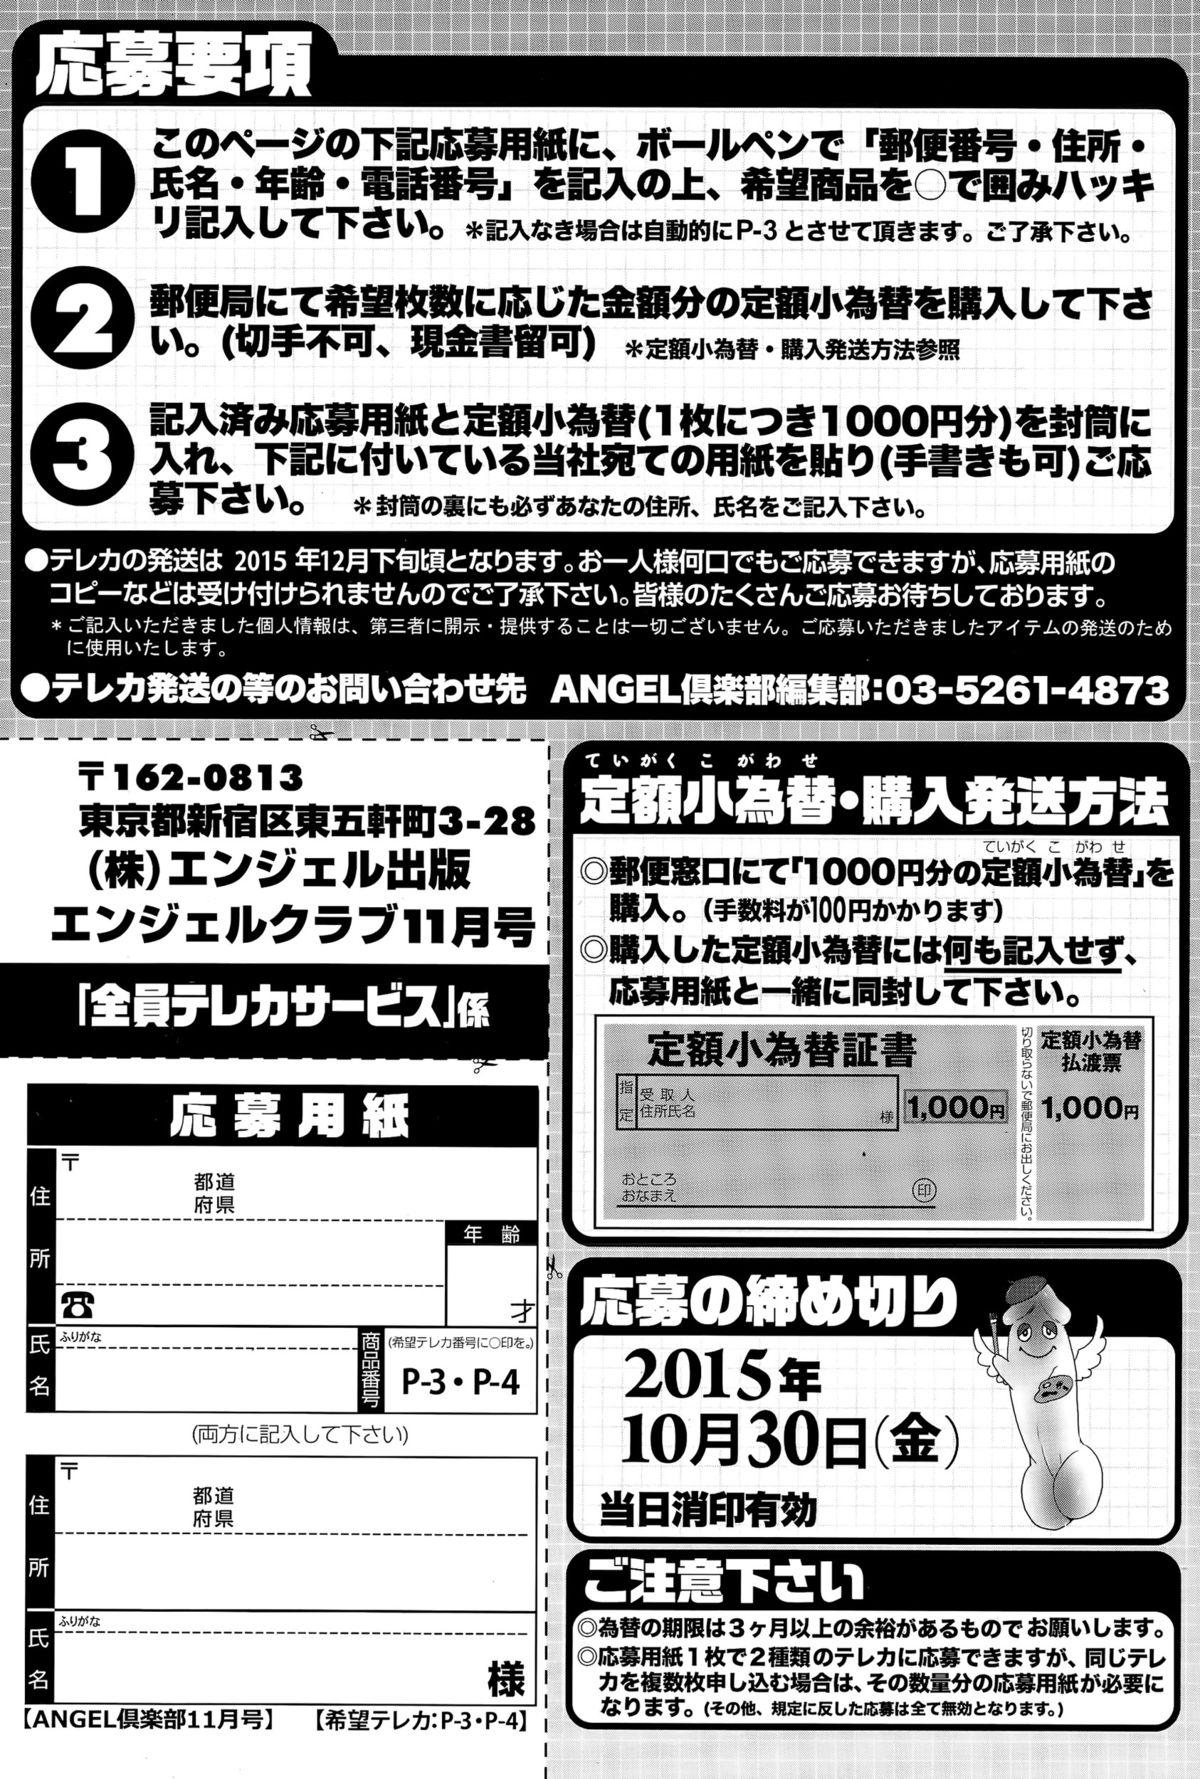 ANGEL Club 2015-11 206